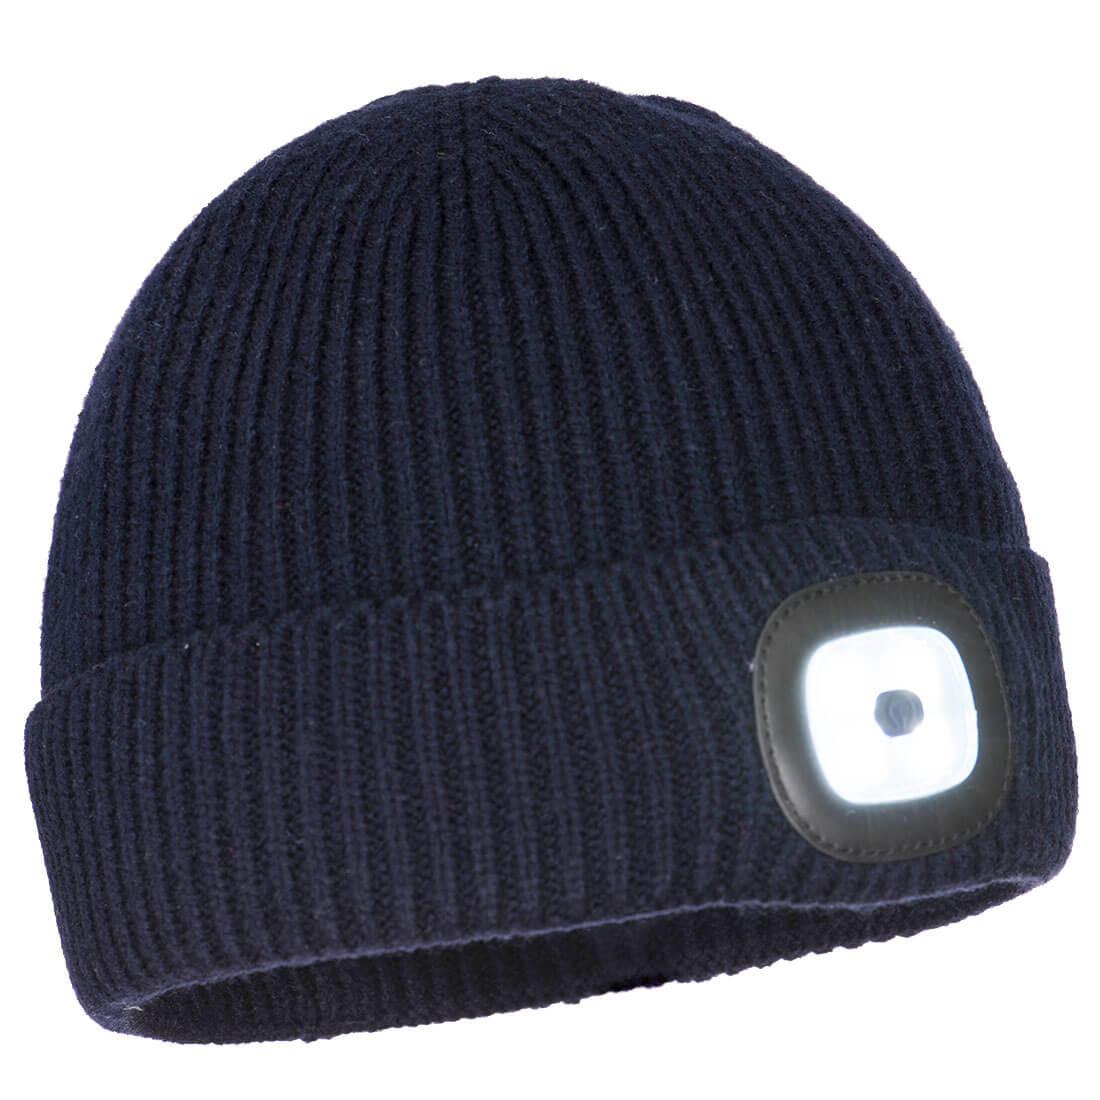 Bonnet LED Workman - Les vêtements de protection